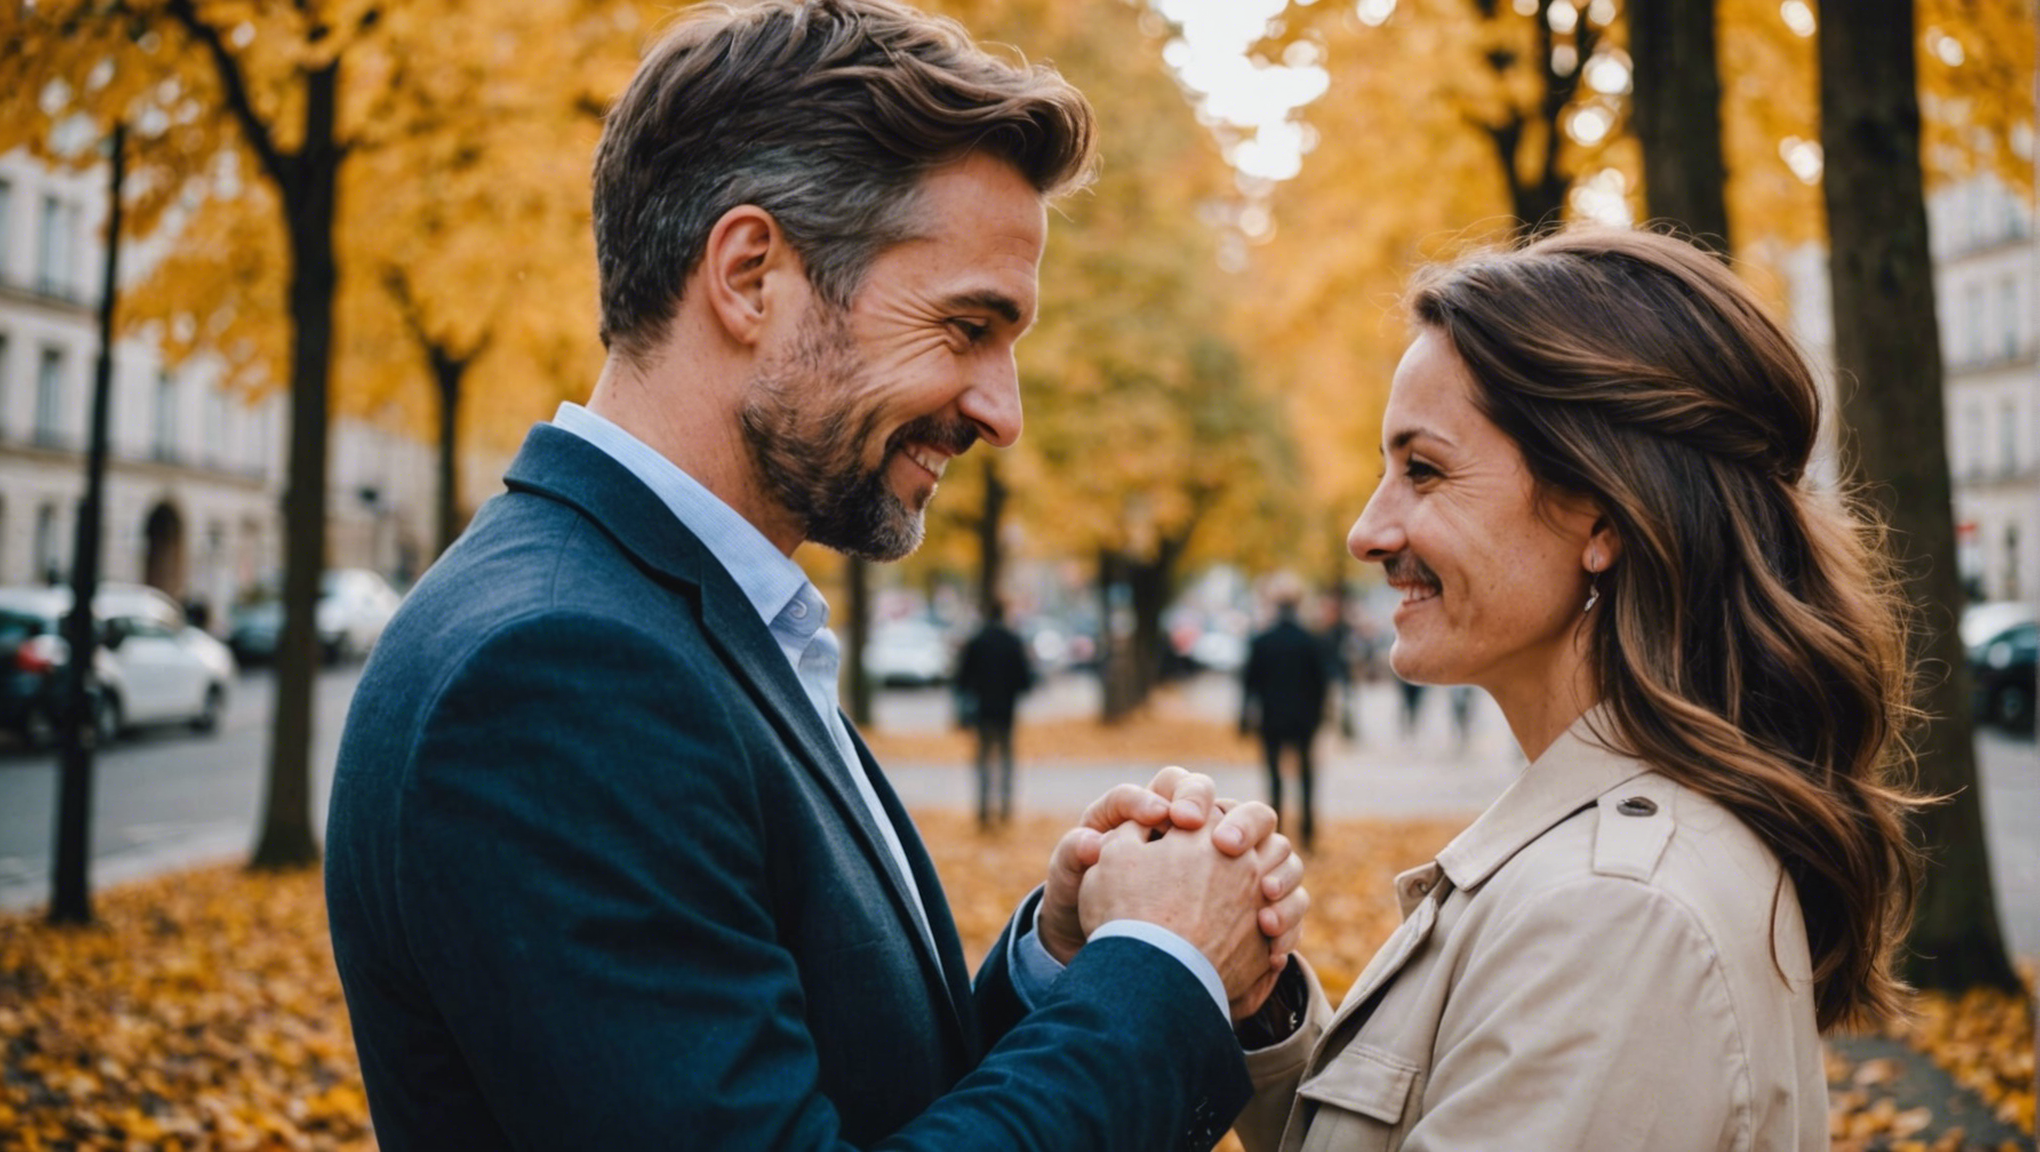 découvrez les clés pour cultiver le bonheur dans votre relation de couple et construire une vie épanouissante à deux.